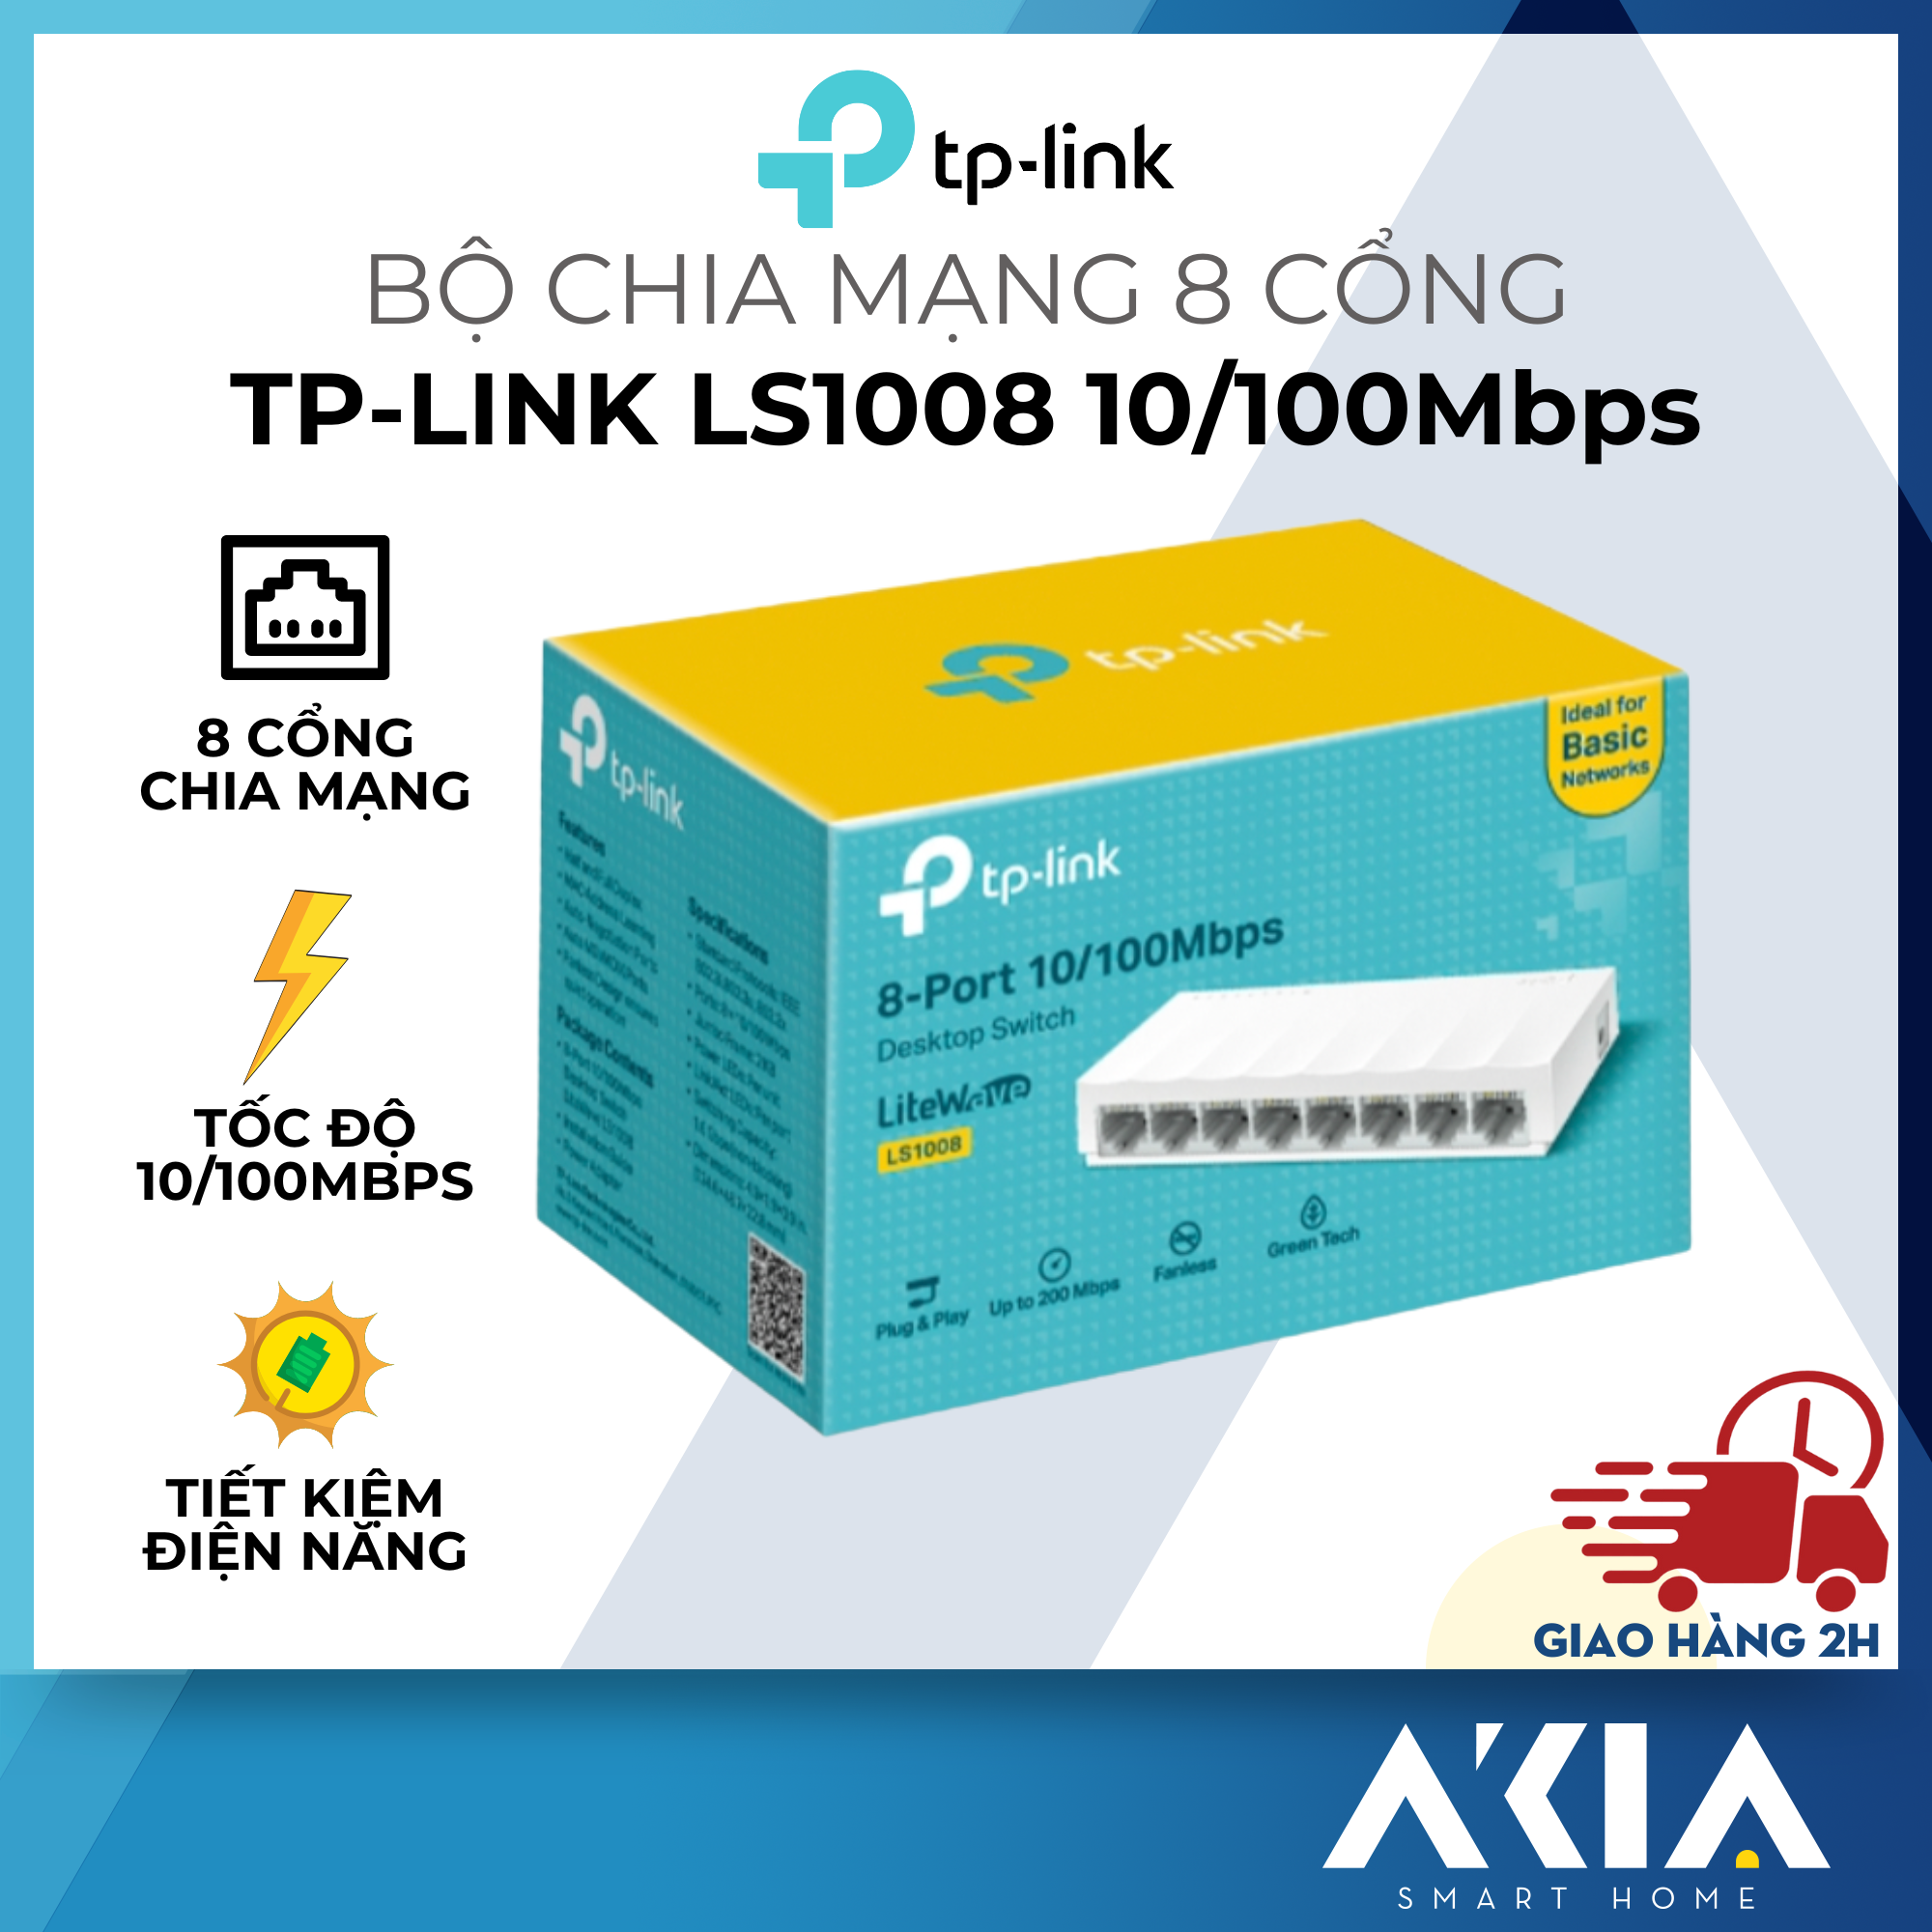 TP-Link LS1008 - Bộ chia mạng 8 cổng, tiết kiệm điện năng, tốc độ cao 10/100 Mbps - Hàng chính hãng